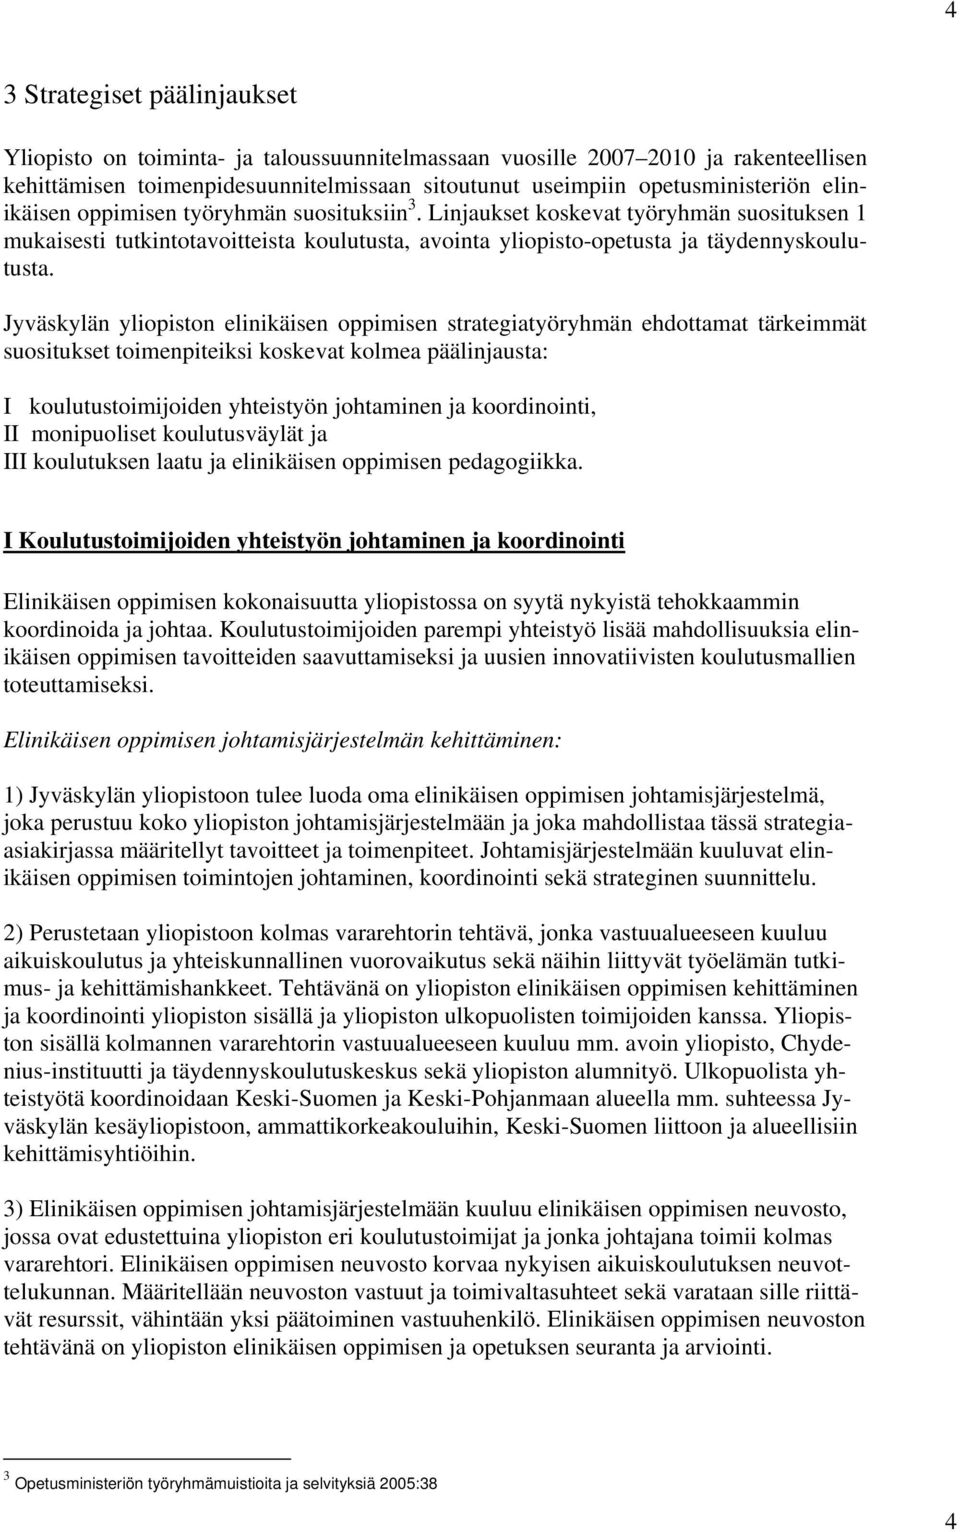 Jyväskylän yliopiston elinikäisen oppimisen strategiatyöryhmän ehdottamat tärkeimmät suositukset toimenpiteiksi koskevat kolmea päälinjausta: I koulutustoimijoiden yhteistyön johtaminen ja